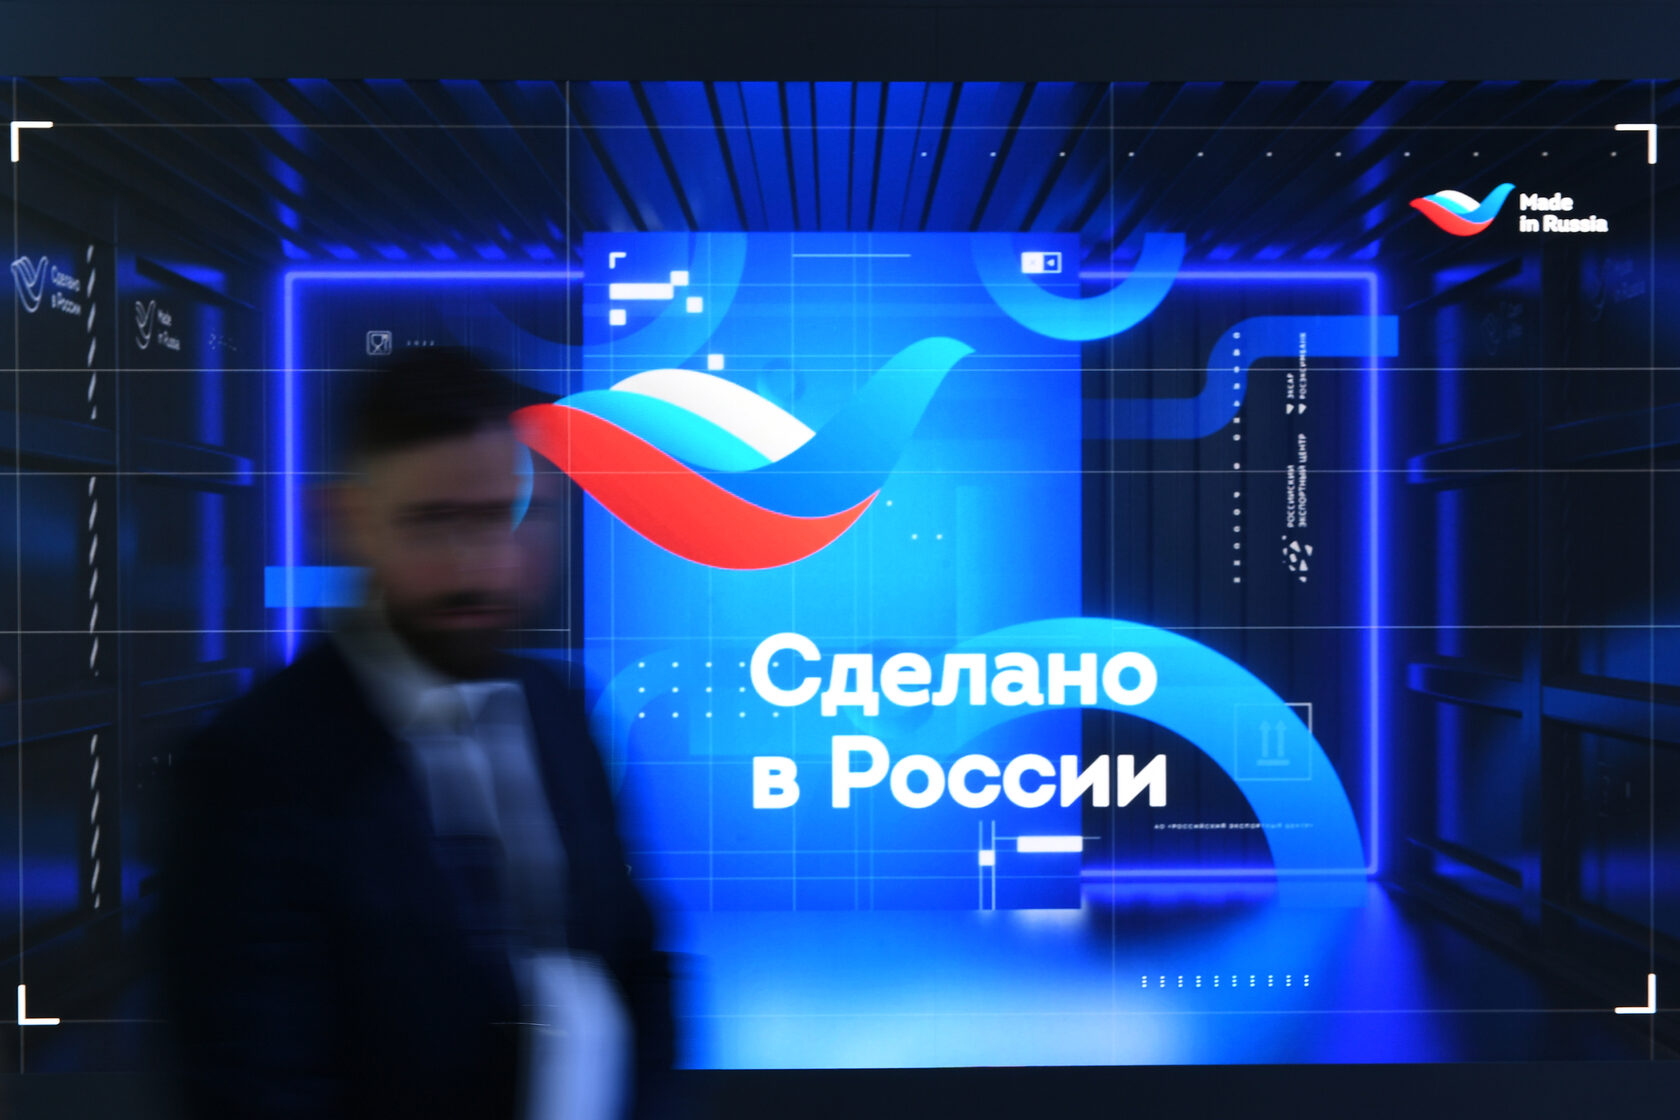 Вопросы циркулярной экономики и экспорта продукции обсудили на форуме «Сделано в России»